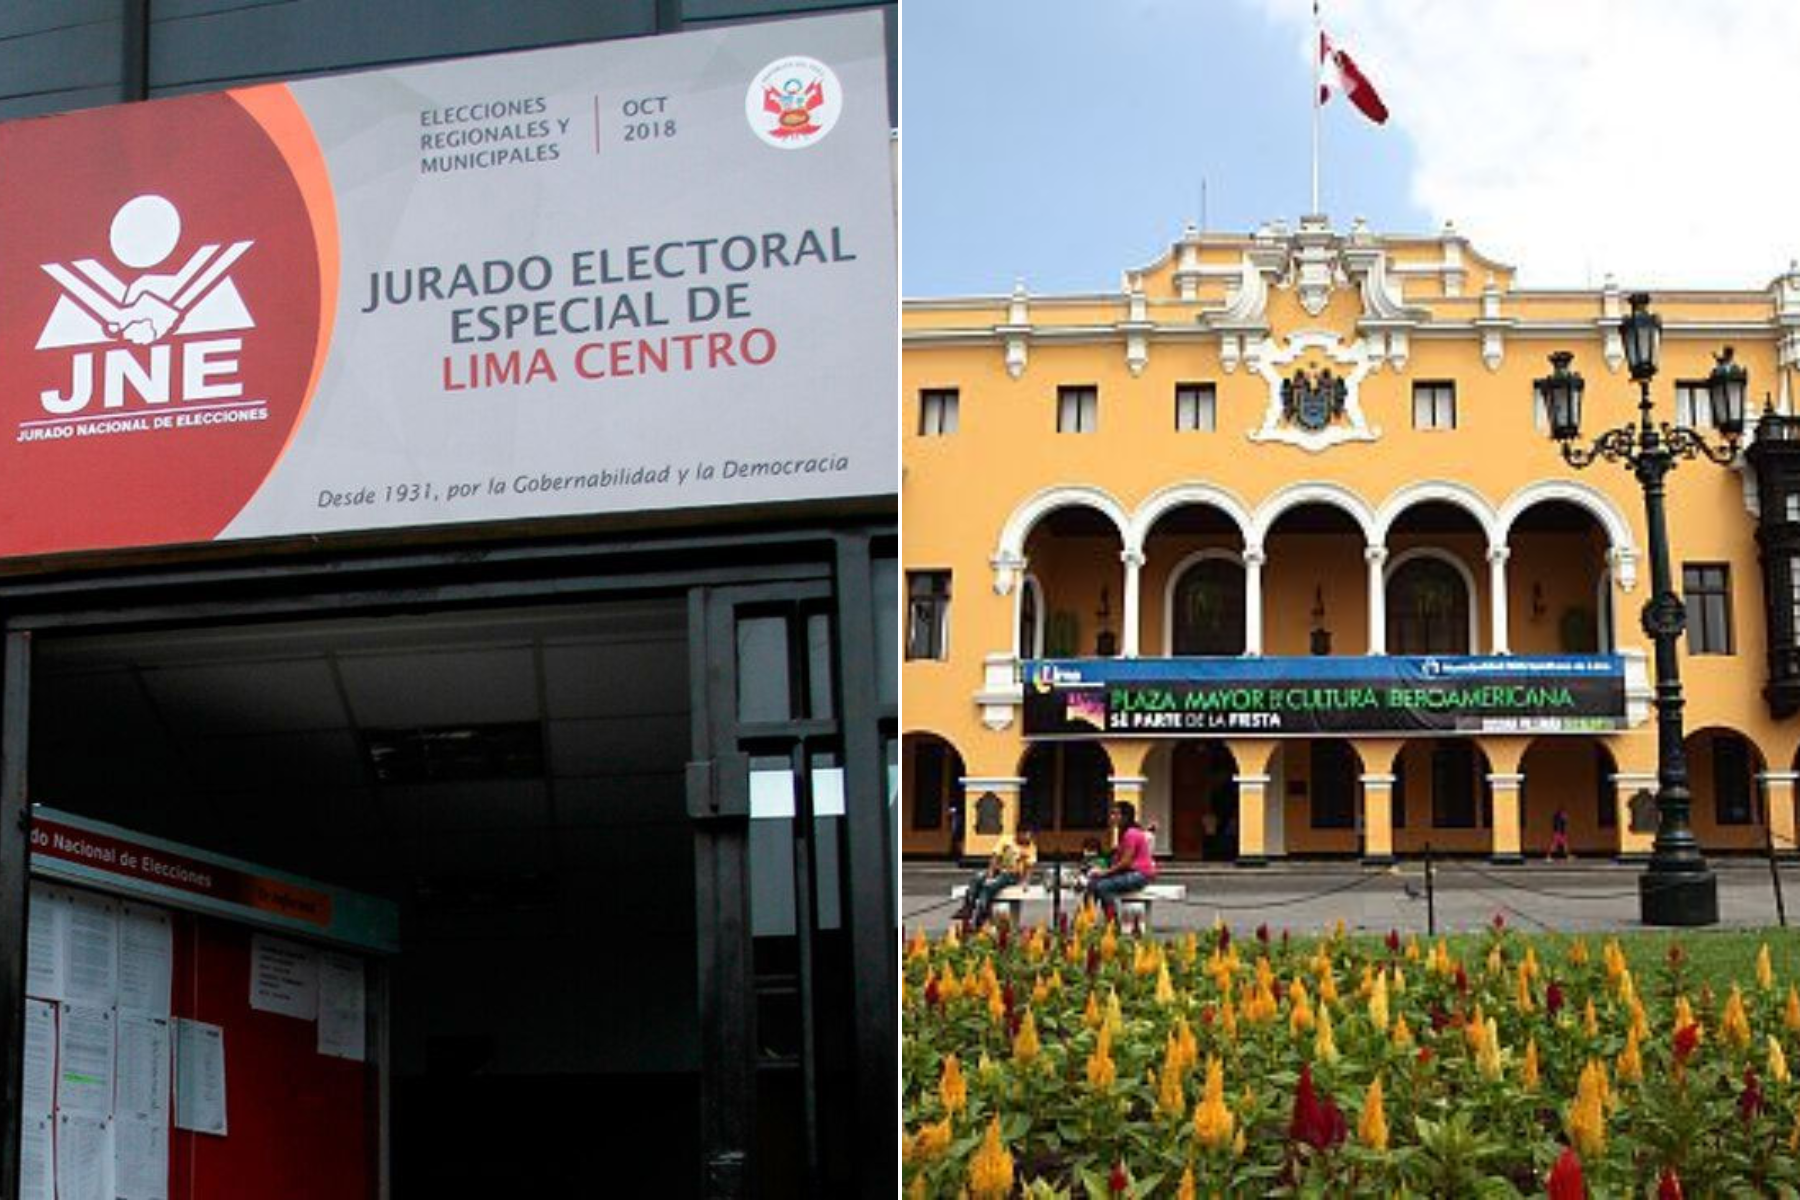 El Jurado Electoral Especial (JEE) de Lima Centro es el encargado de supervisar las listas presentadas por las agrupaciones políticas que aspiran a llegar al sillón municipal en las elecciones que se llevarán a cabo este 7 de octubre.